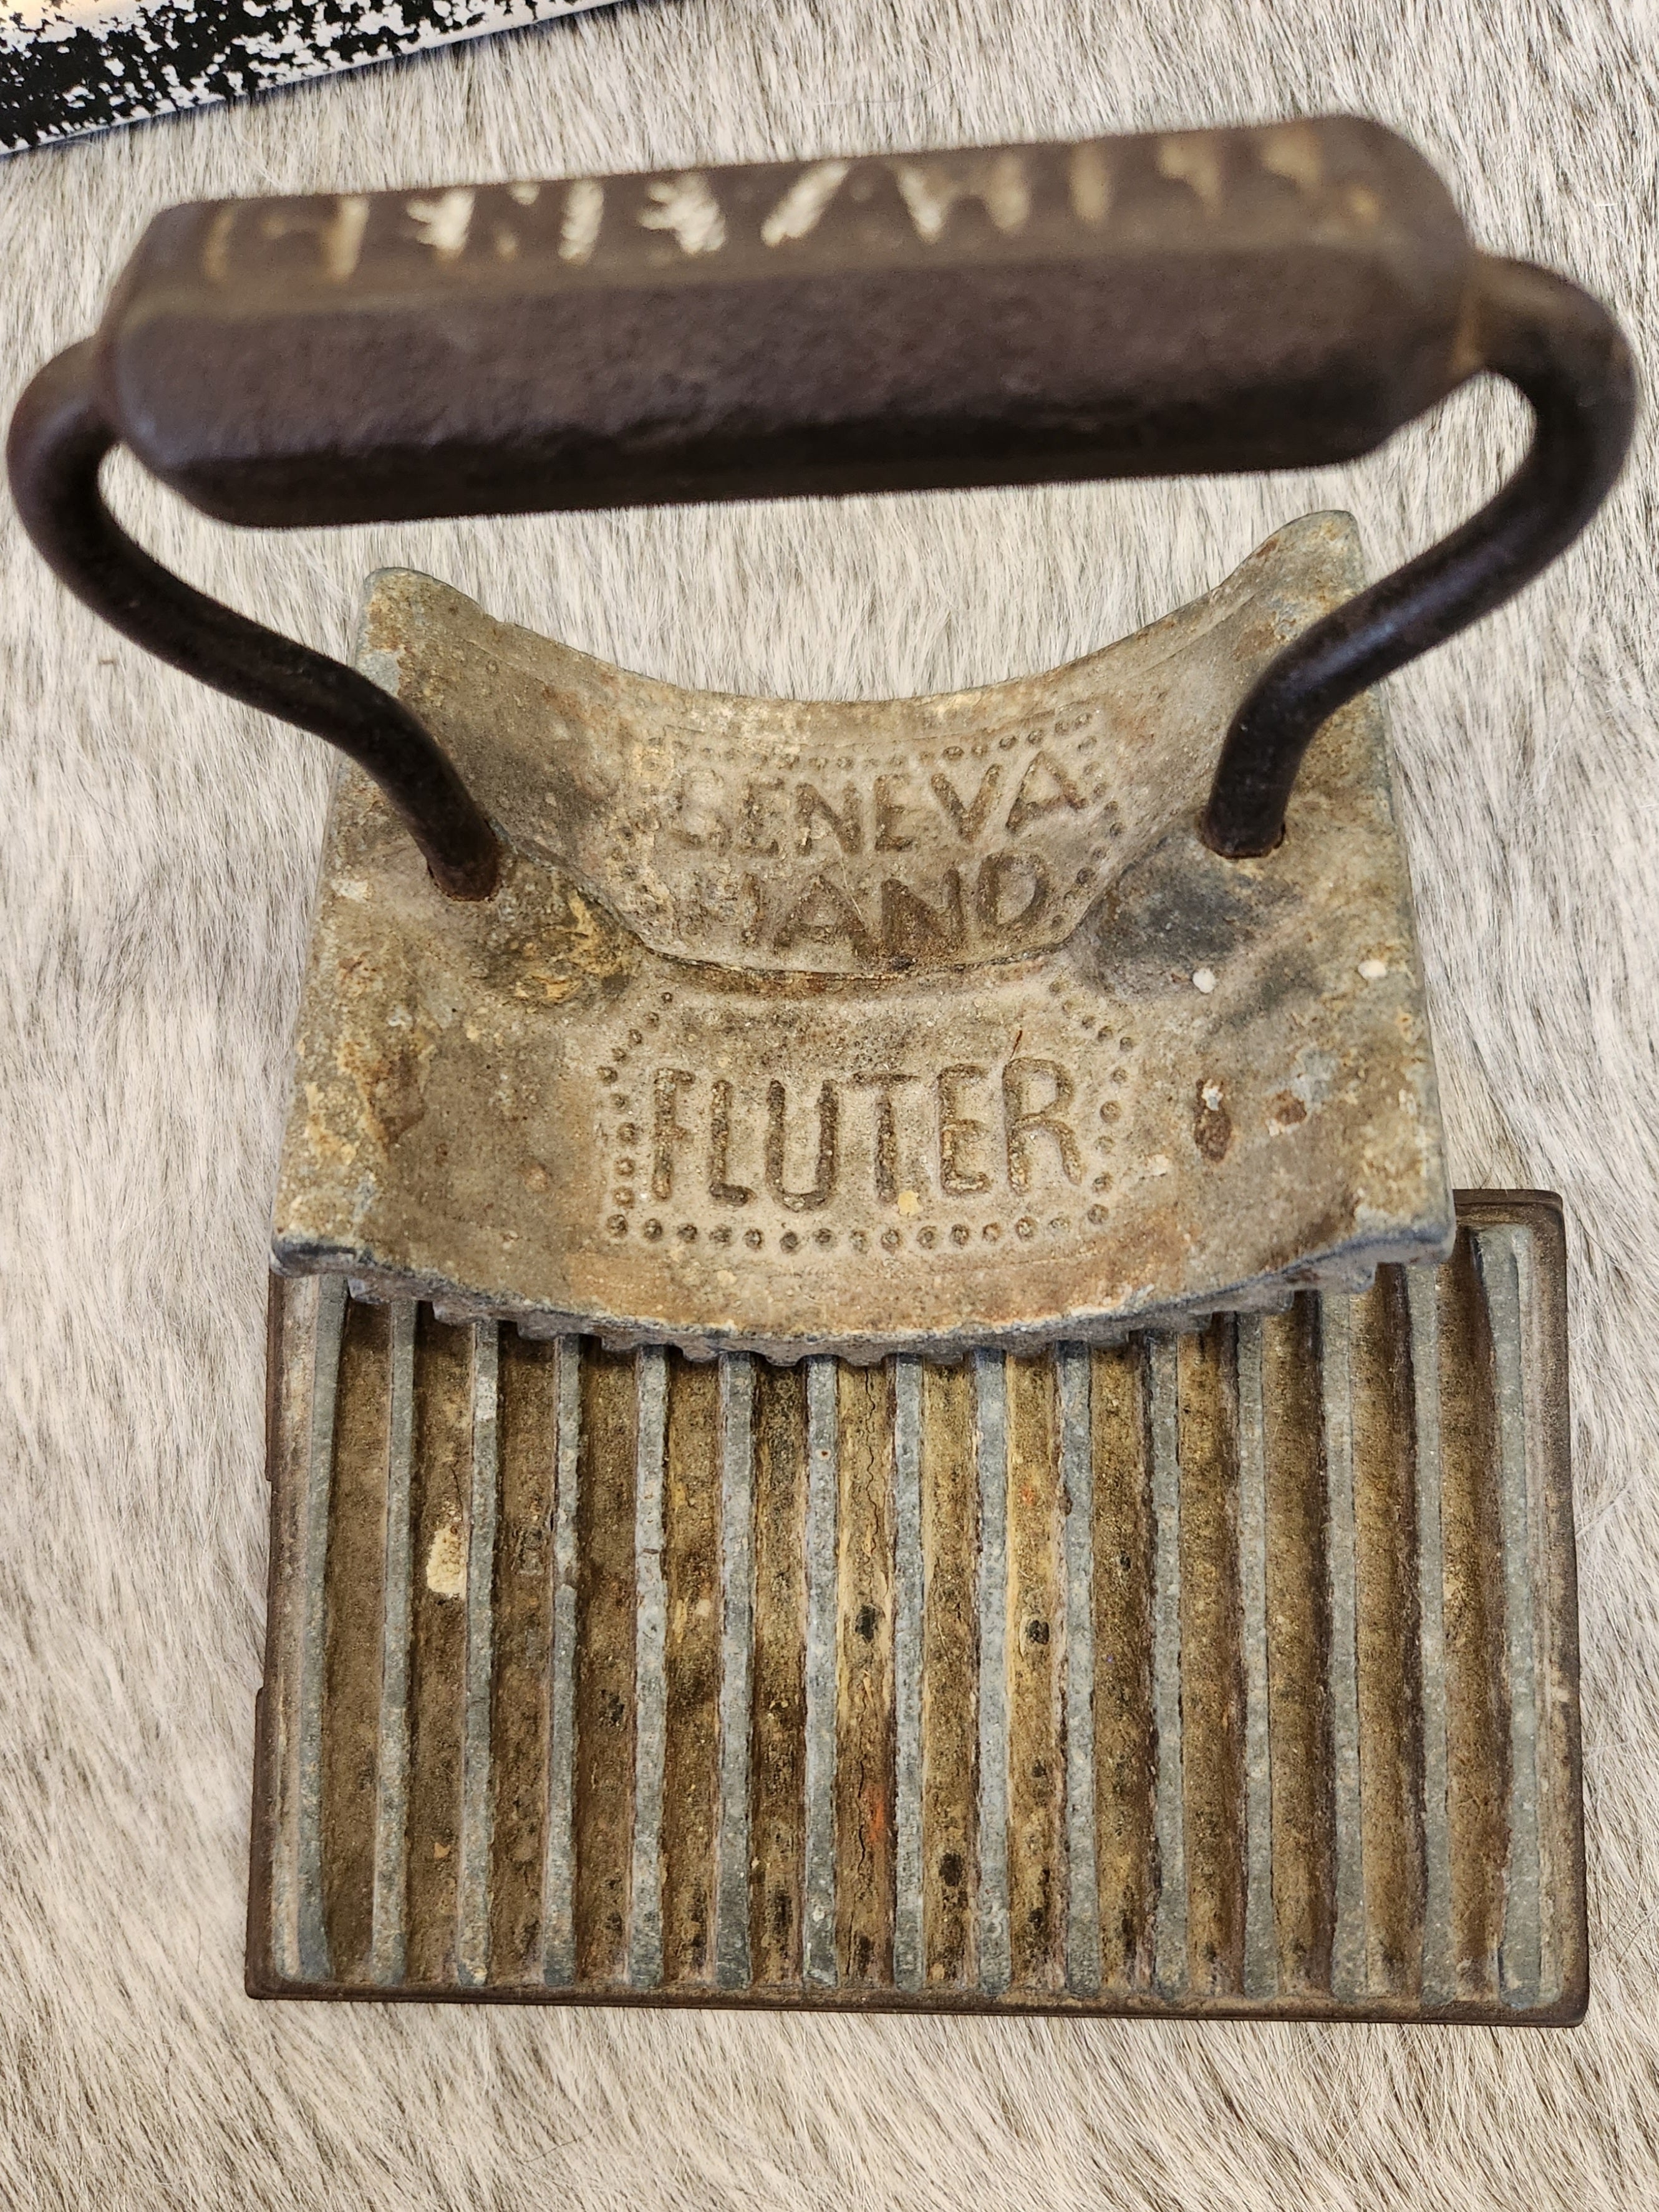 1860's Geneva Hand Fluter